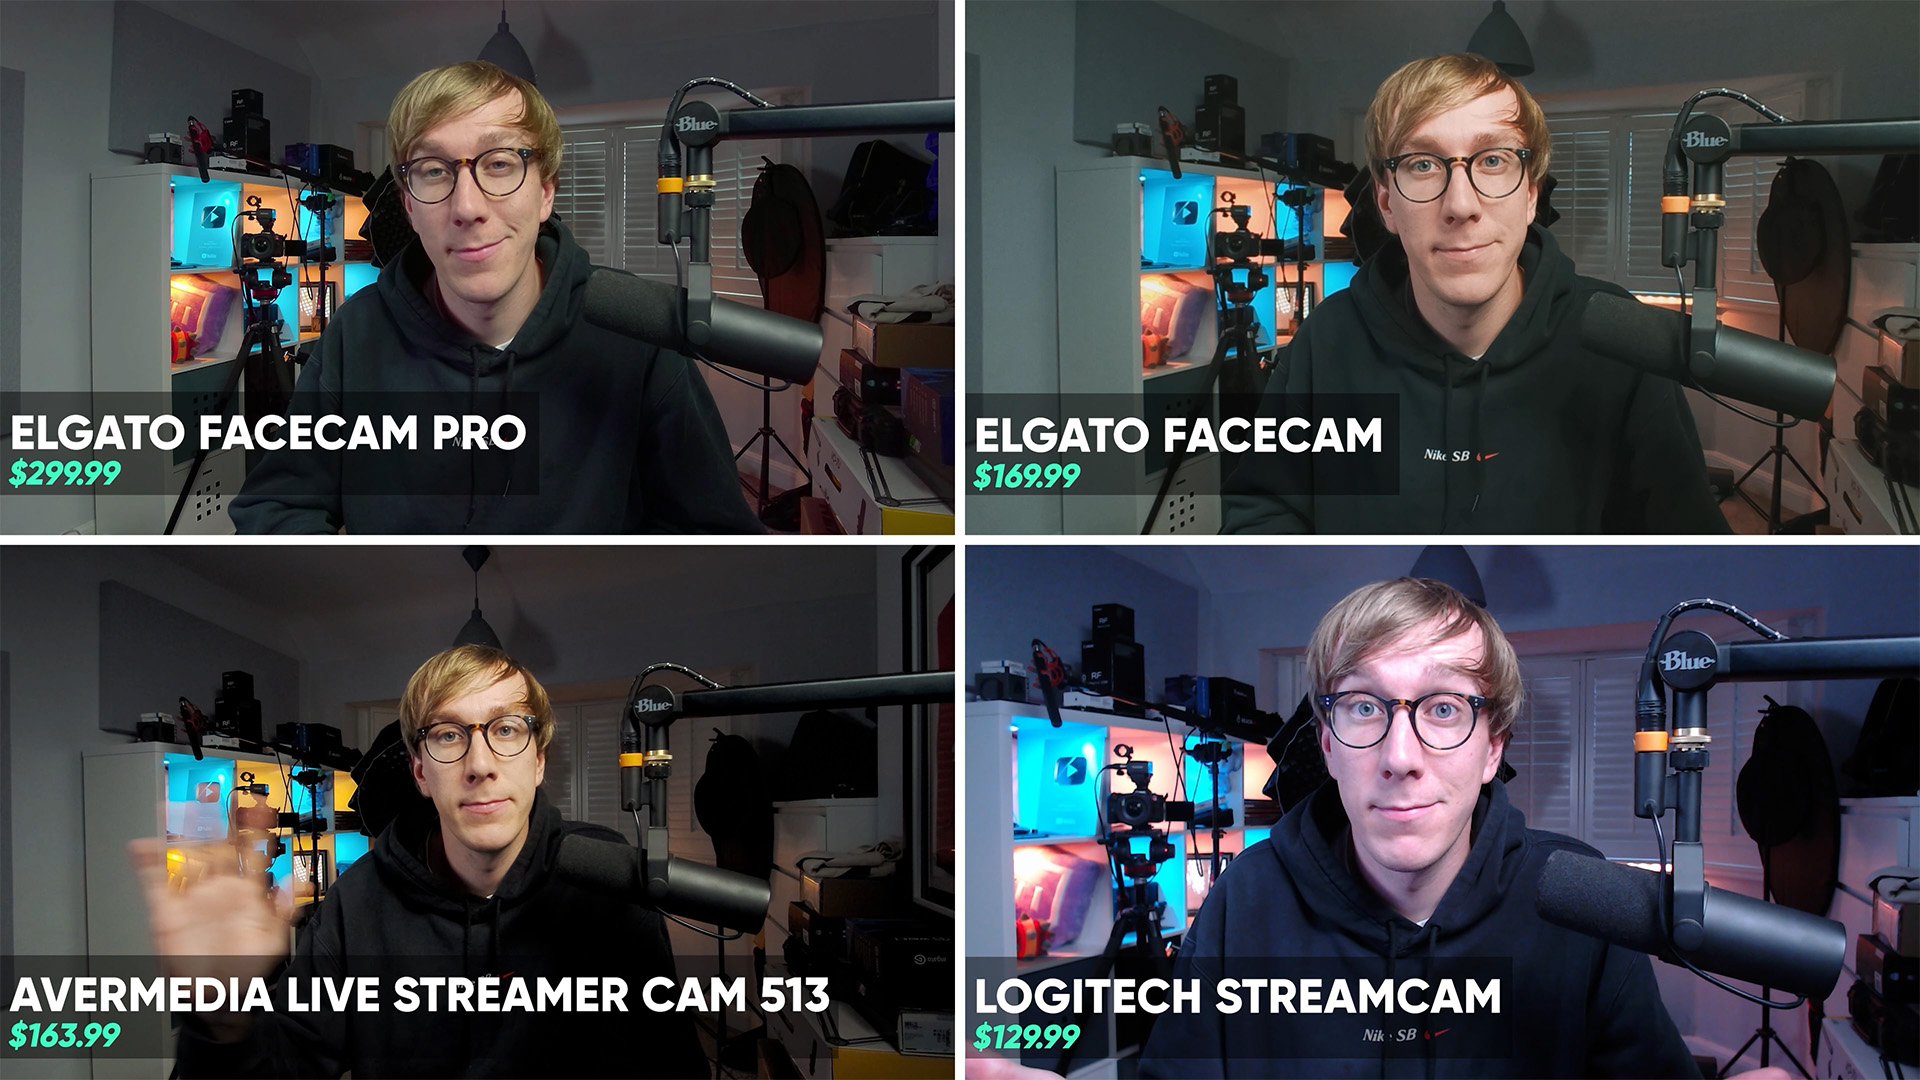 Facecam Pro vs AVerMedia PW513 Logitech Streamcam Facecam